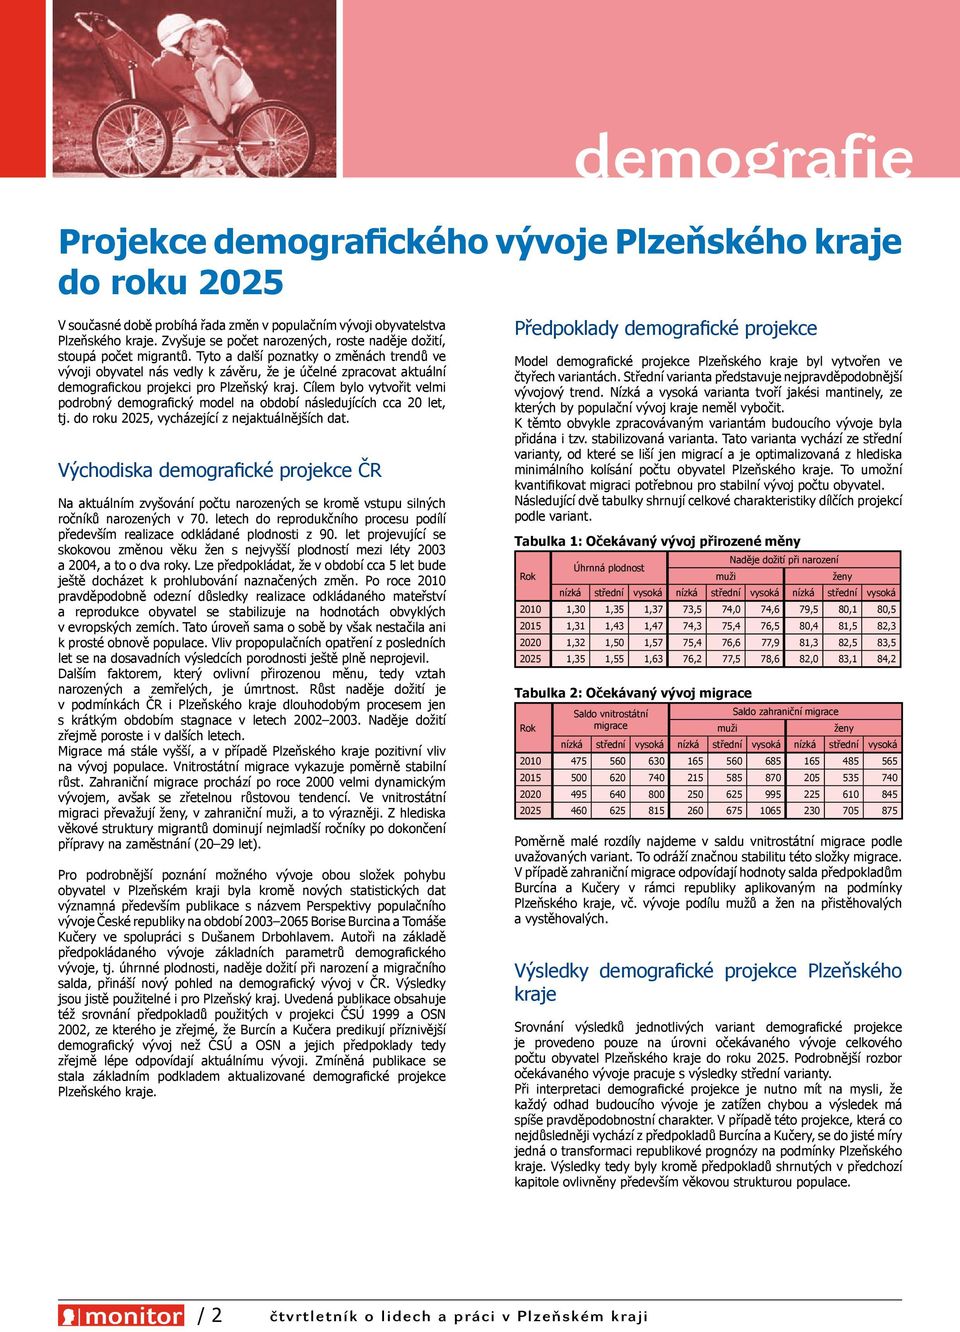 Tyto a další poznatky o změnách trendů ve vývoji obyvatel nás vedly k závěru, že je účelné zpracovat aktuální demografickou projekci pro Plzeňský kraj.